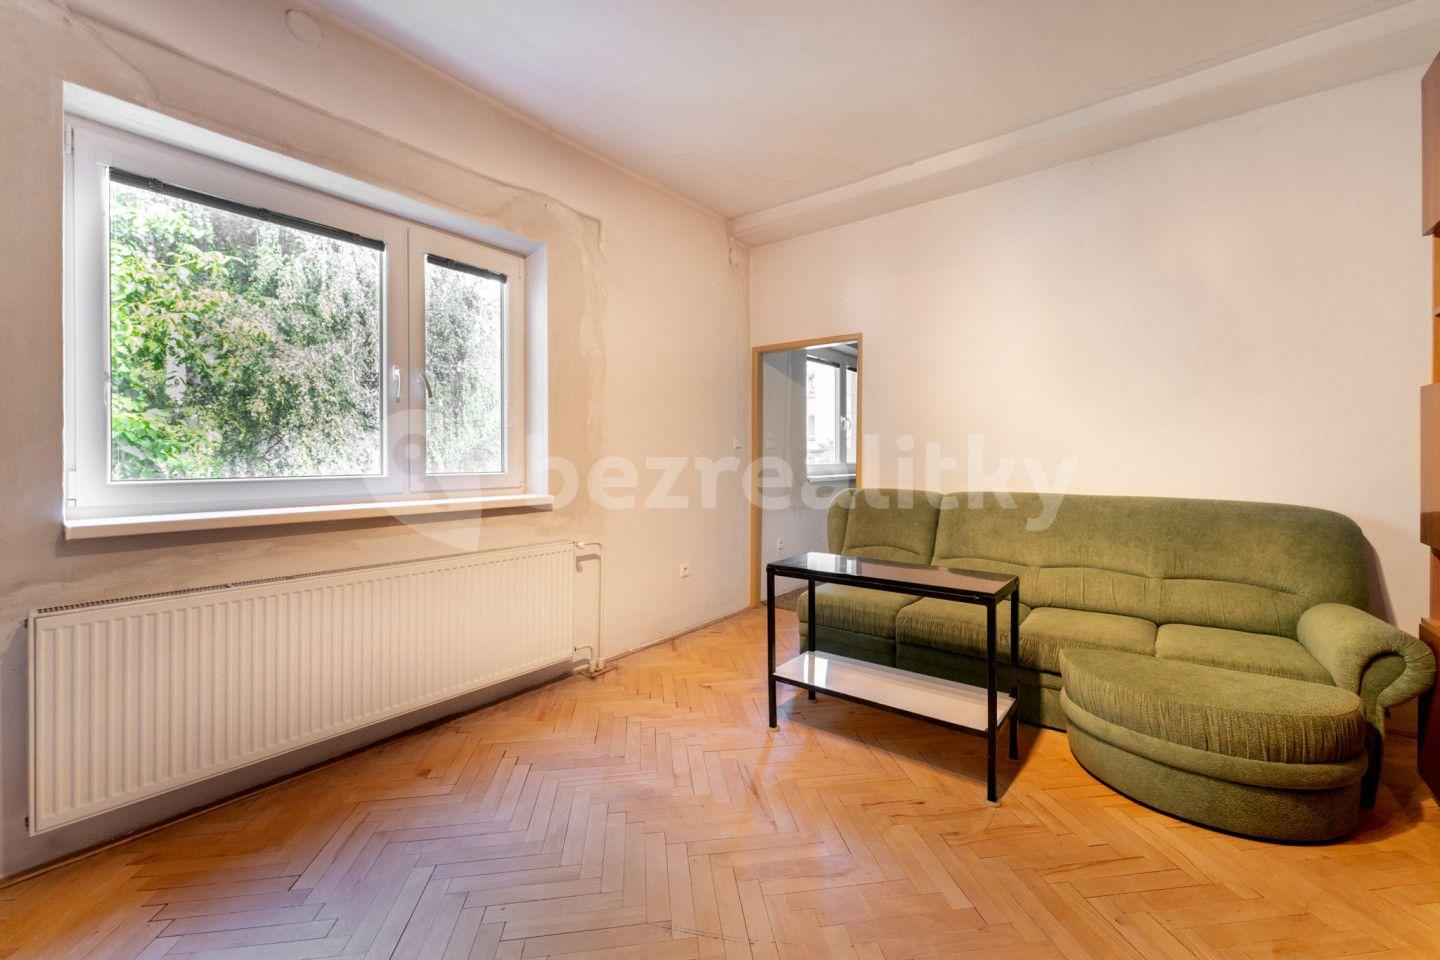 4 bedroom flat for sale, 103 m², Sokolská, Zlín, Zlínský Region